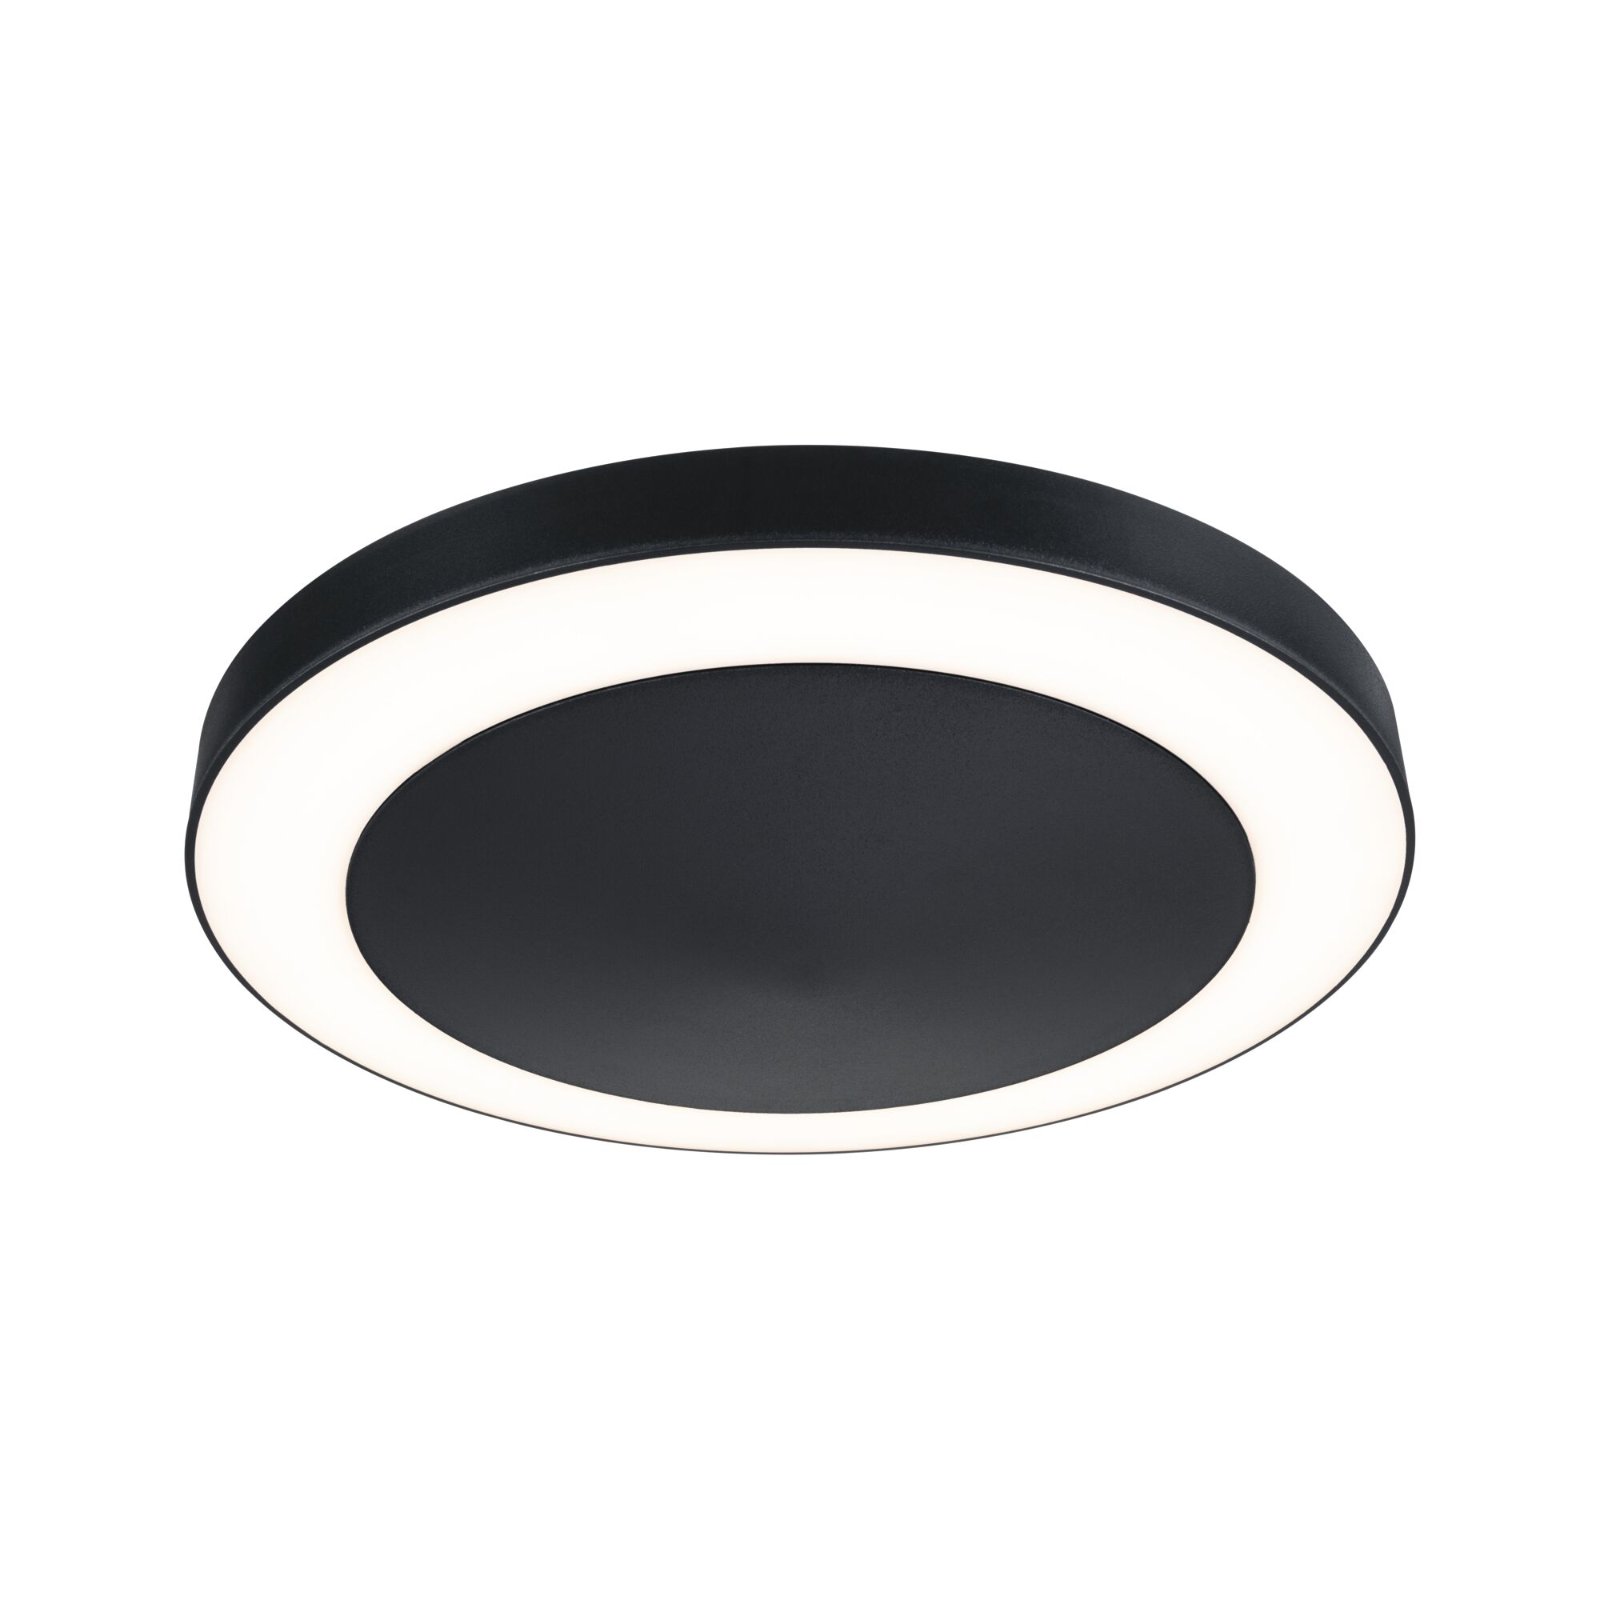 PAULMANN LED stropní svítidlo Circula s pohybovým čidlem teplá bílá IP44 kruhové antracit, 94526